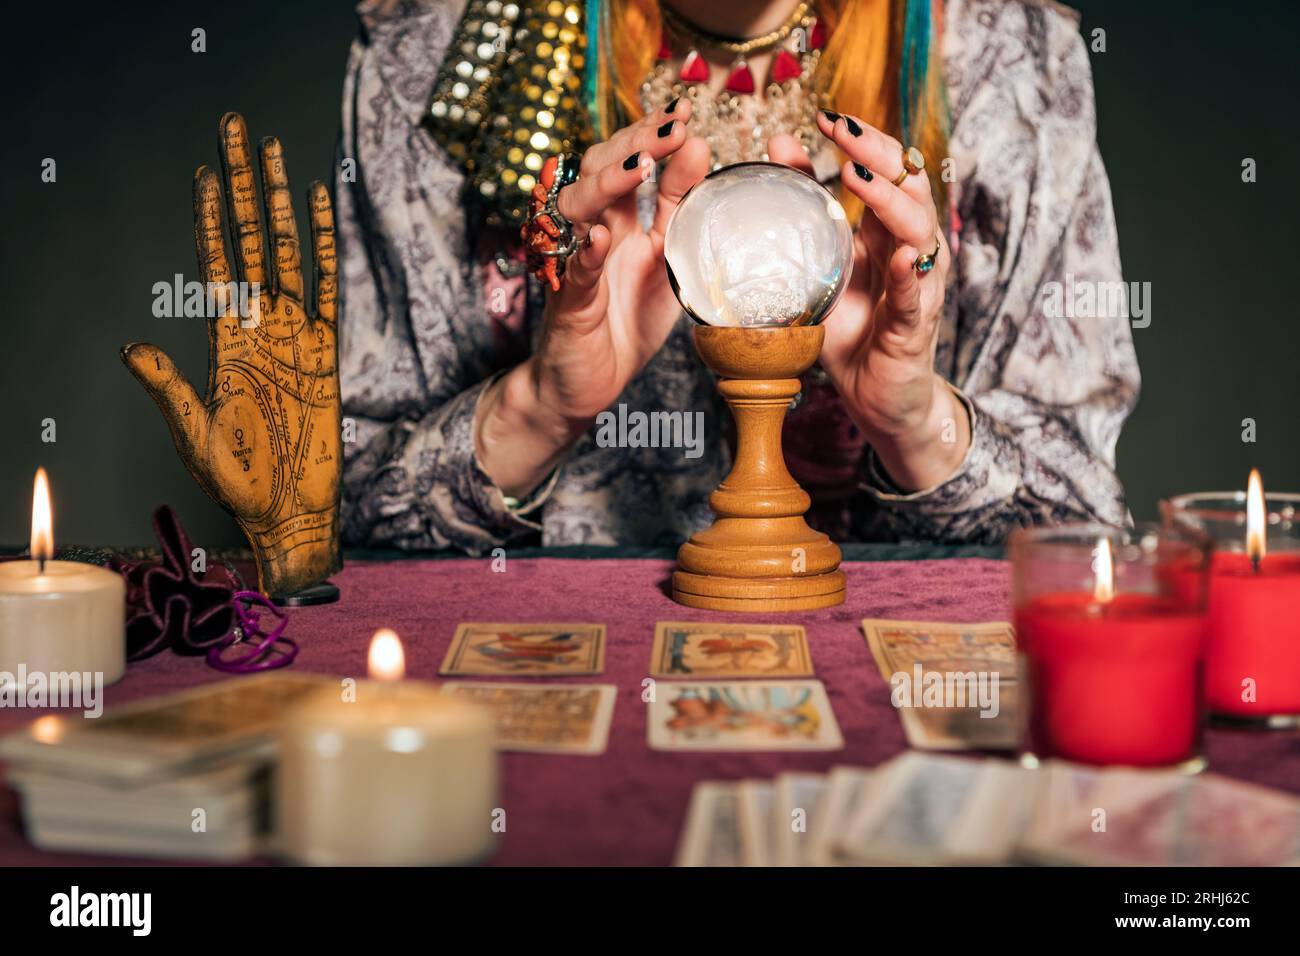 Baue Wahrsagerin in authentischer Kleidung, die mit brennenden Kerzen und Tarotkarten am Tisch sitzt, während du mit dem Zauberball die Zukunft erraten kannst Stockfoto